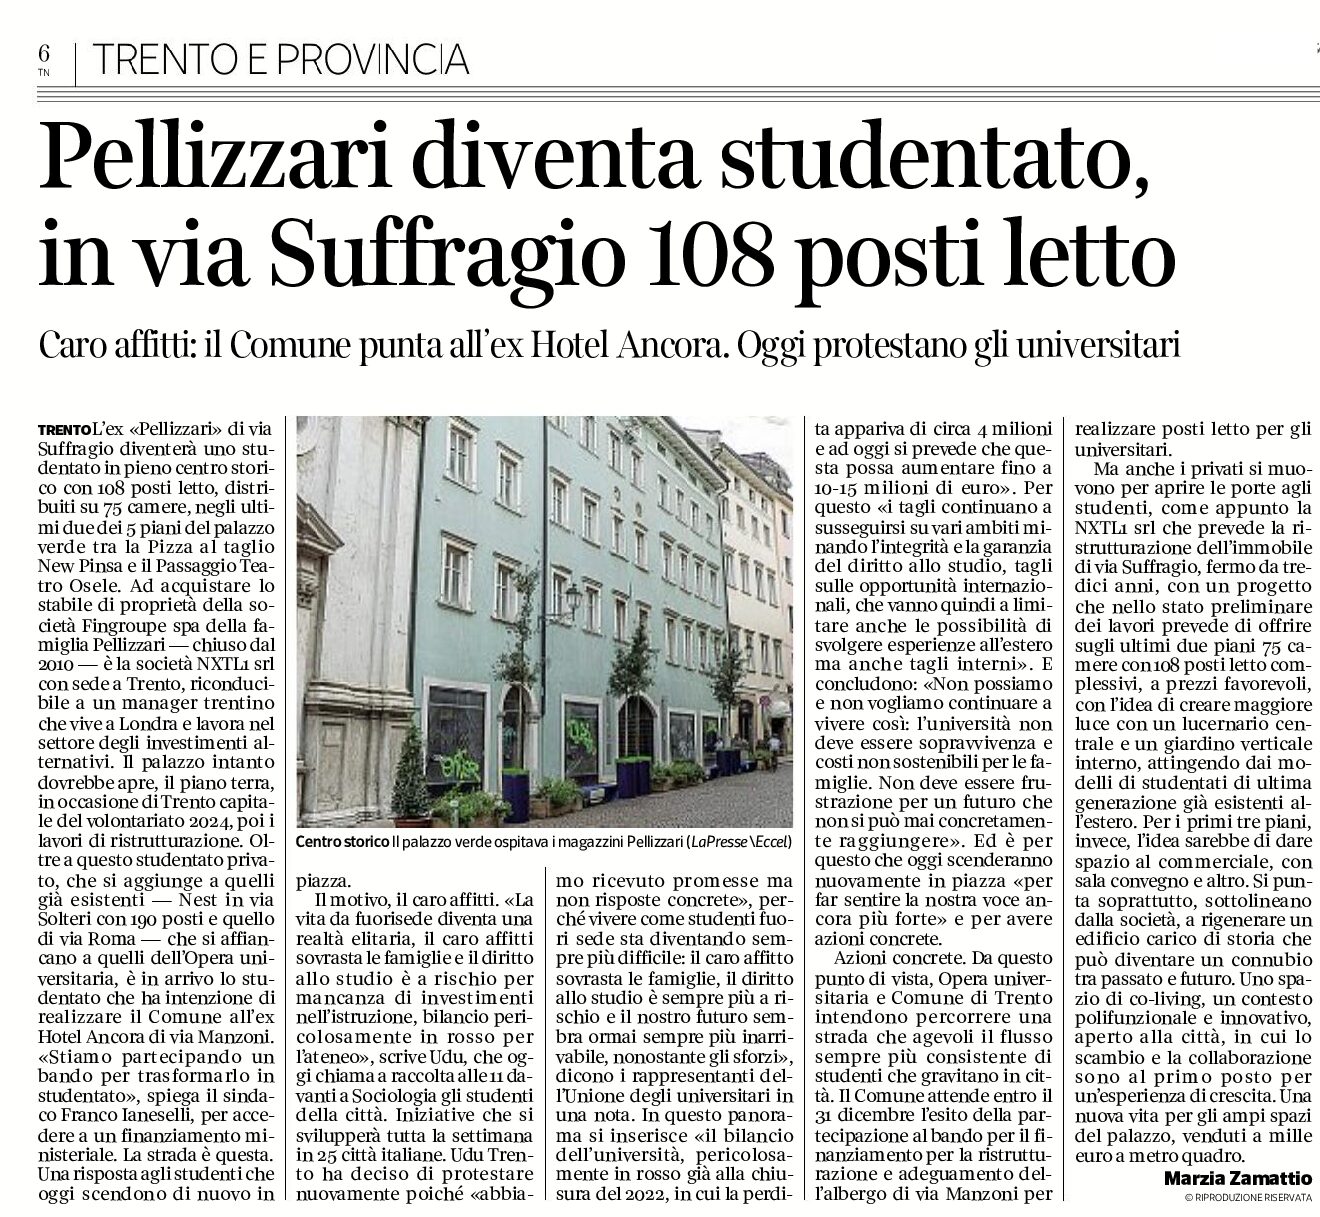 Trento: Pellizzari diventa studentato, in via Suffragio, 108 posti letto